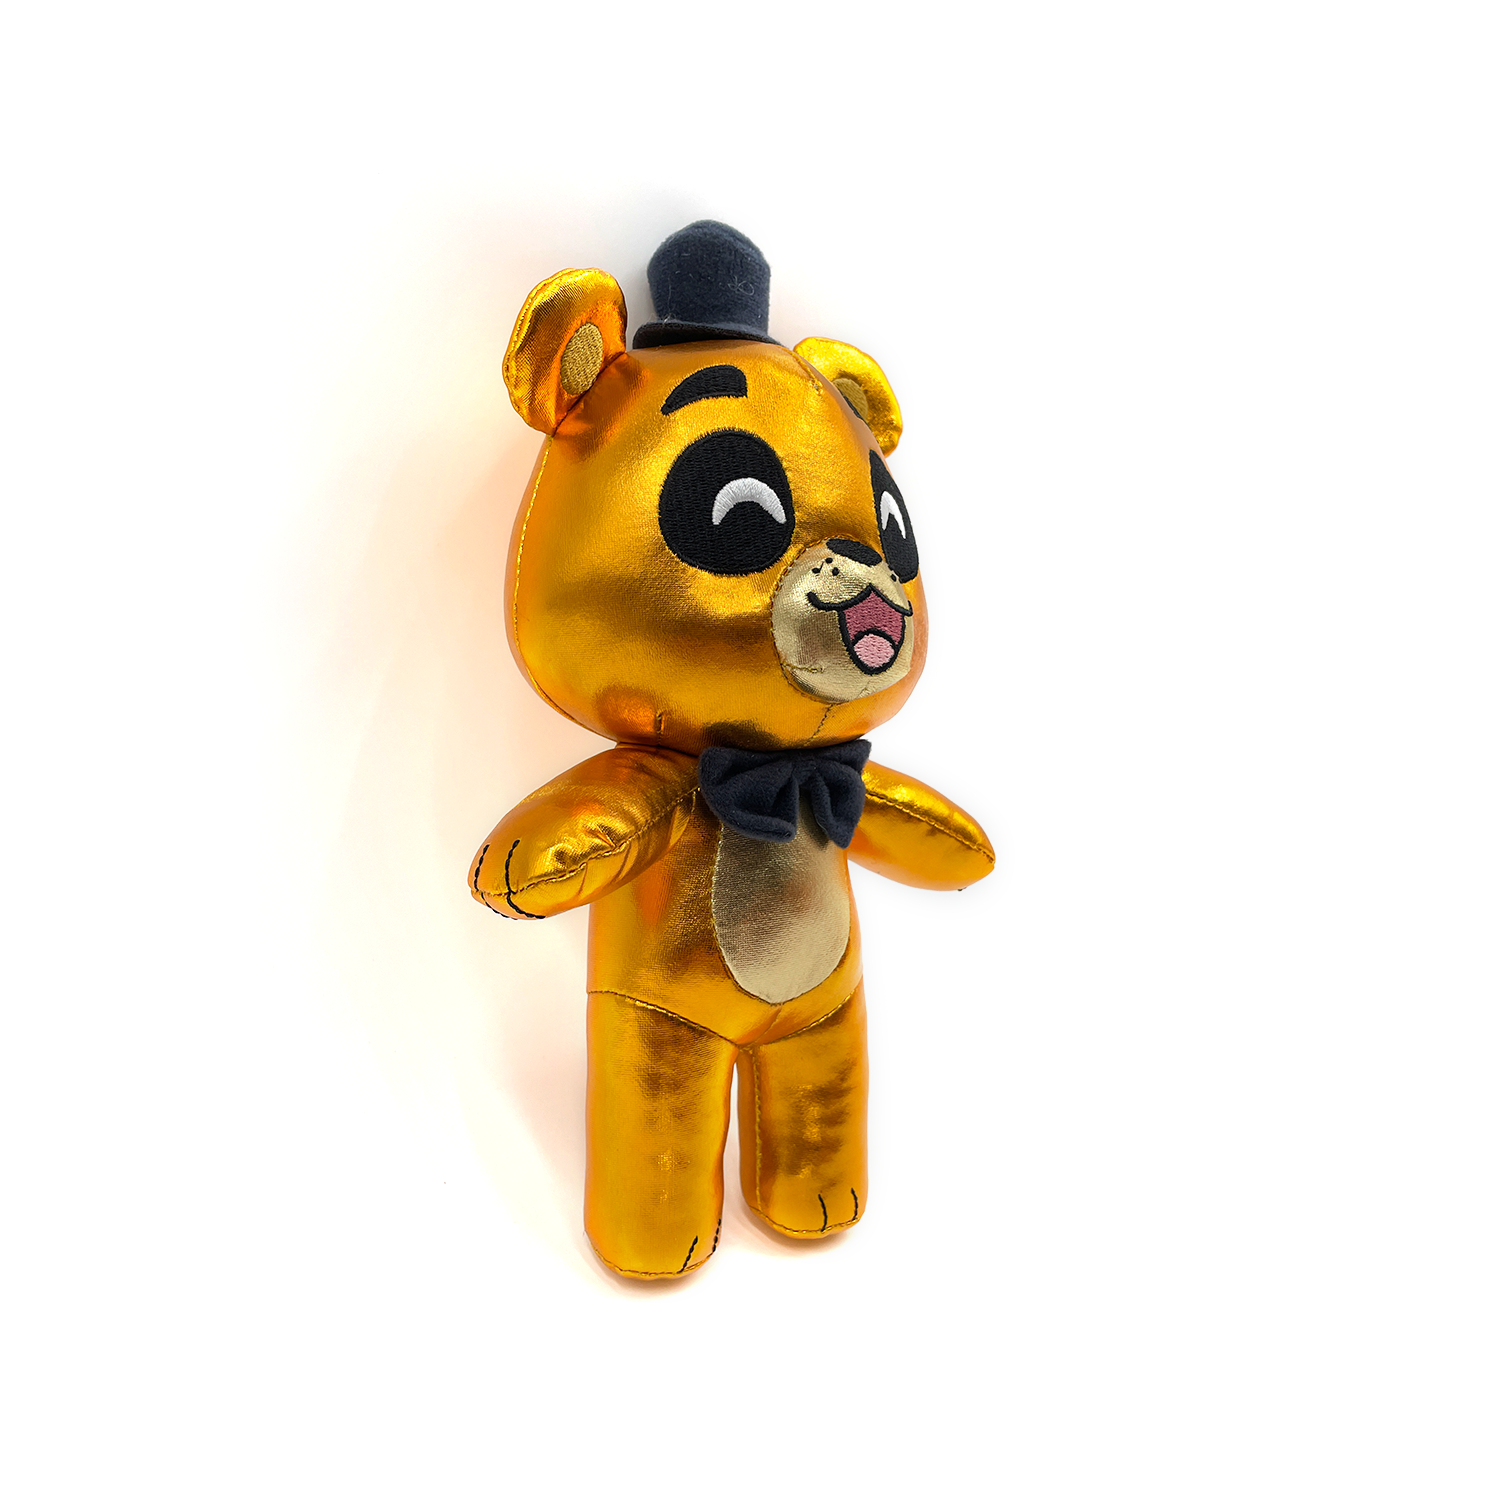  Golden Freddy Plush Toy, FNAF plushies Toy, FNAF All